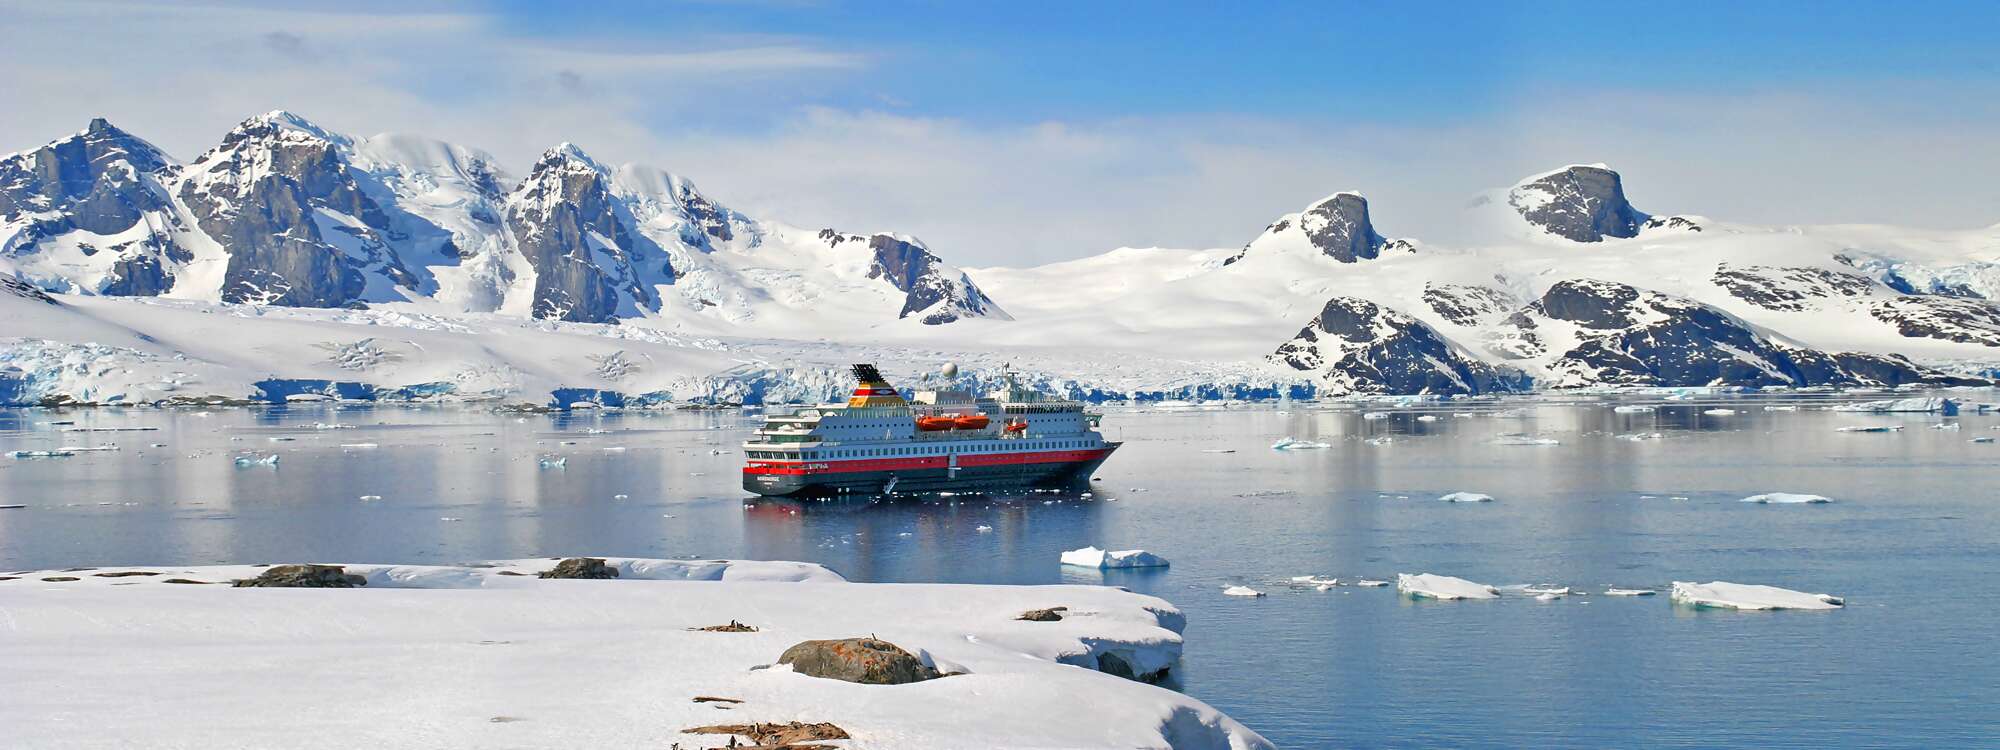 Anlandung an der Petermann-Insel (Petermann Island), eine kleine Insel vor der Antarktischen Halbinsel (gehört zur Inselgruppe Wilhelm-Archipel) in der Antarktis